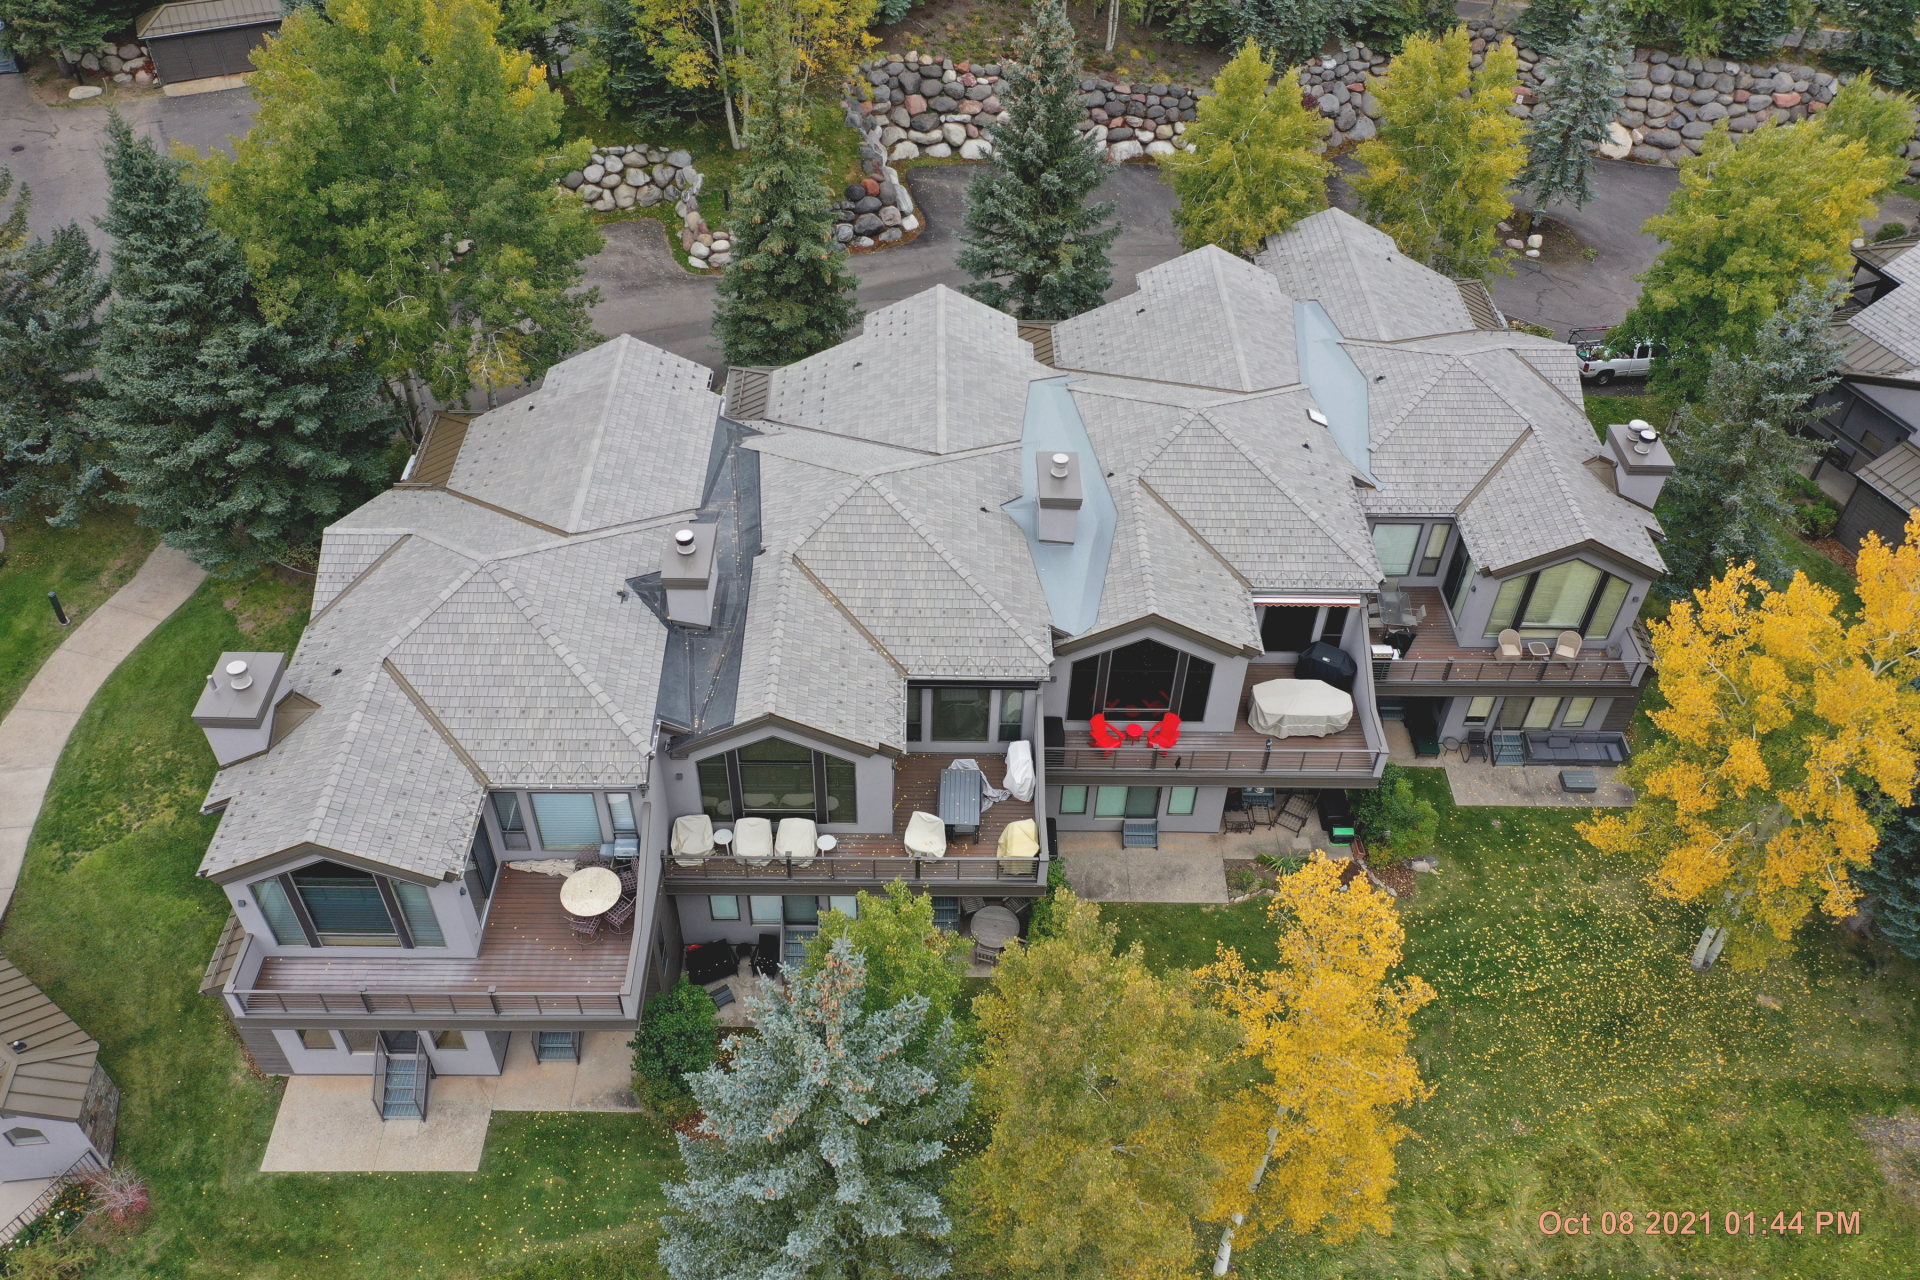 Colorado Roofing Company